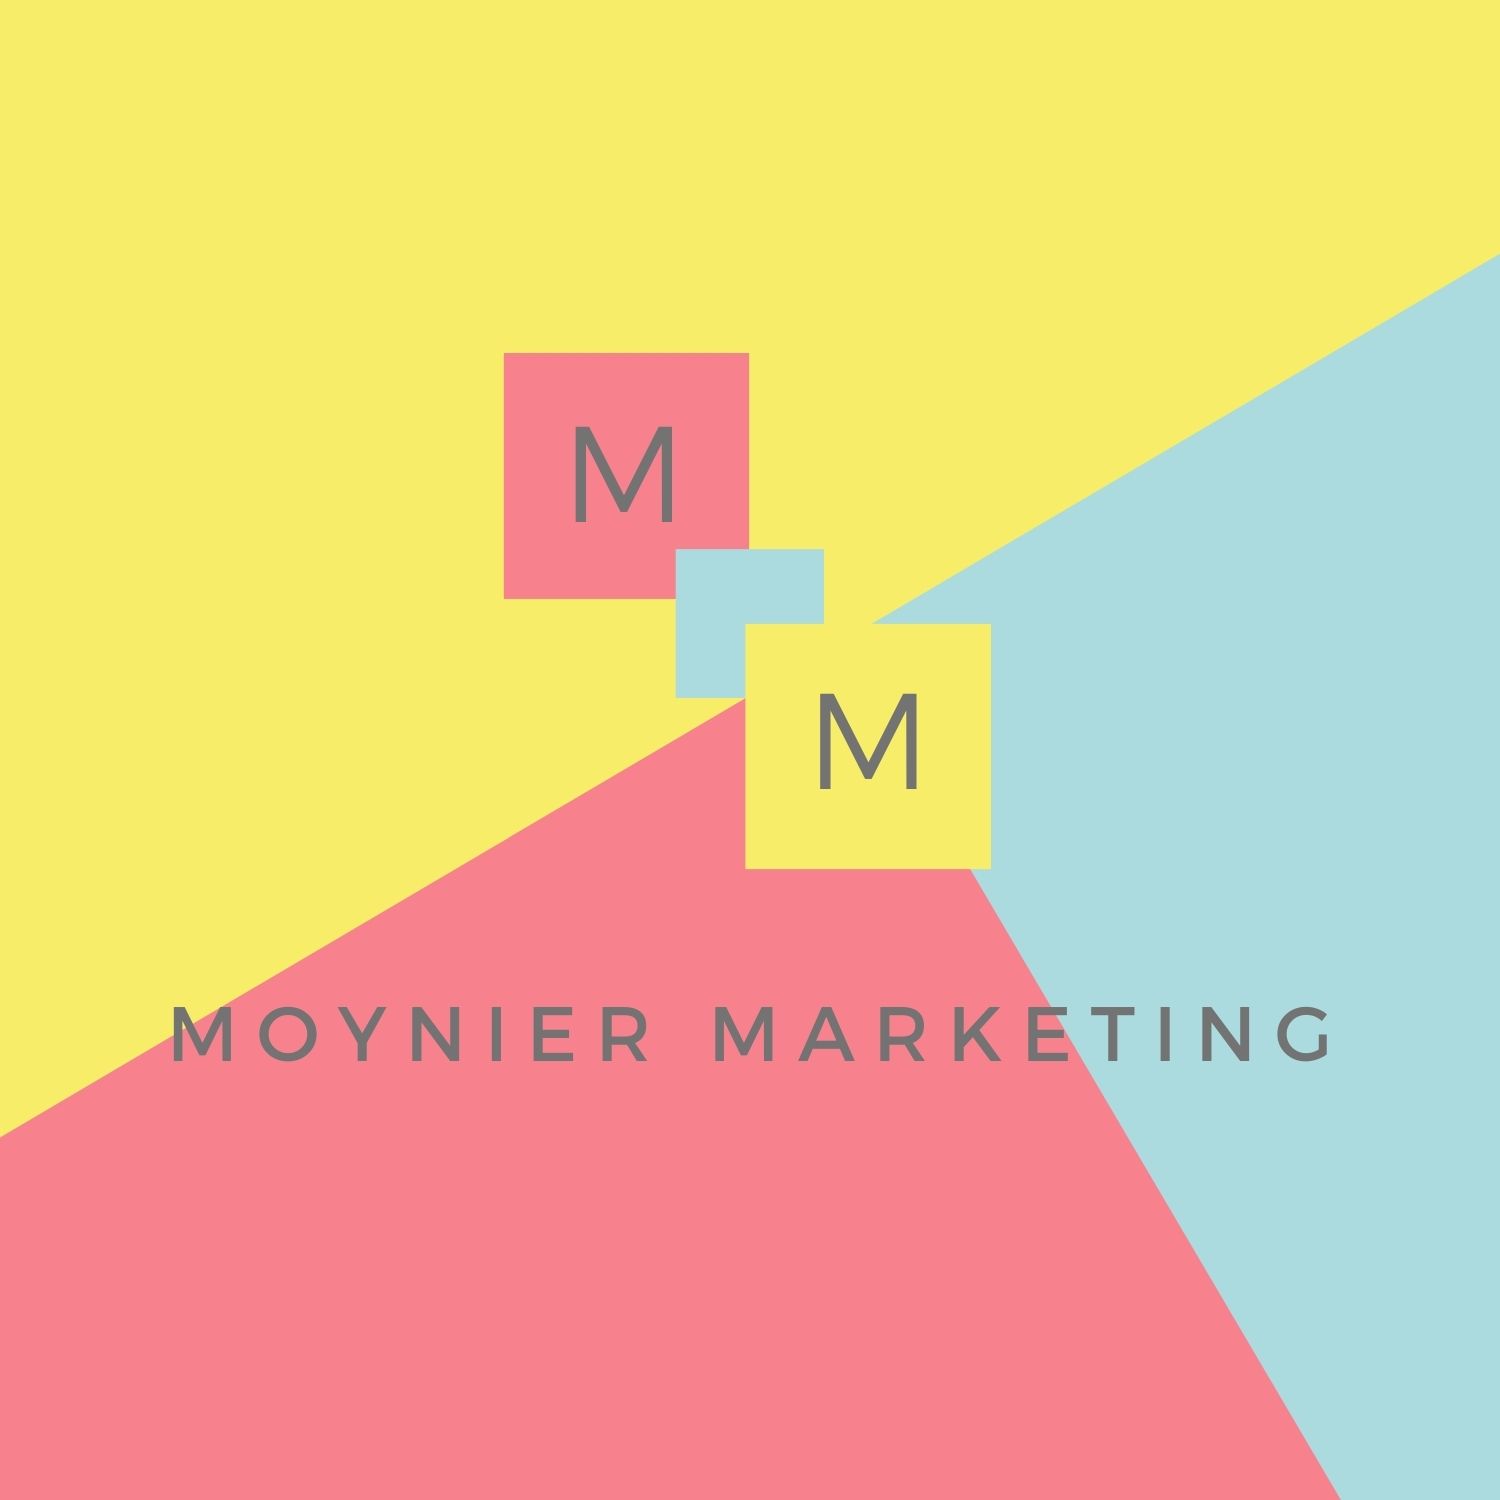 Moynier Marketing